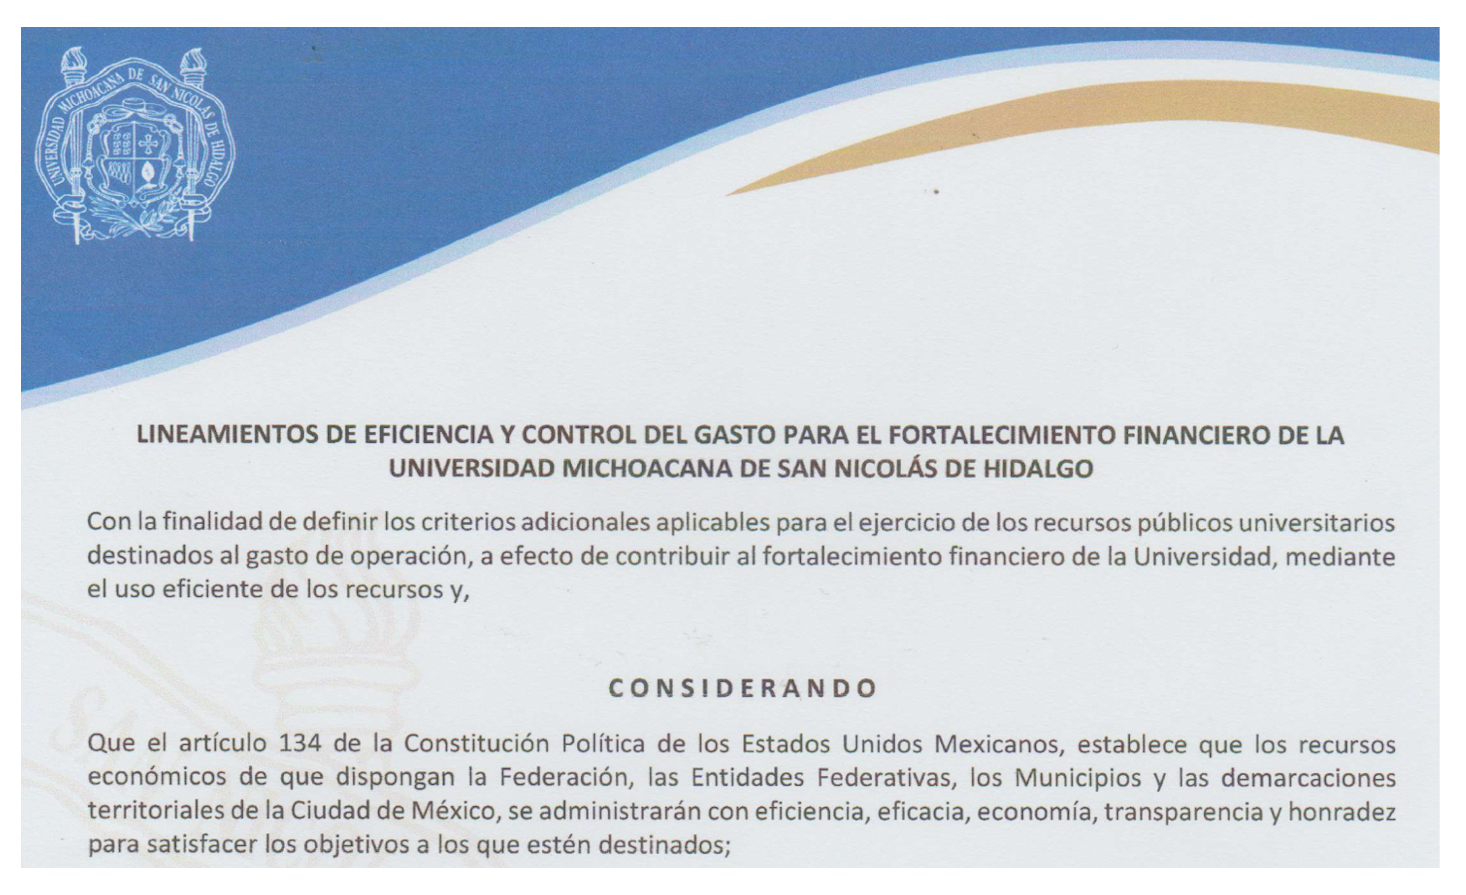 Lineamientos de Eficiencia y Control del Gasto para el Fortalecimiento Financiero de la Universidad Michoacana de San Nicolás de Hidalgo